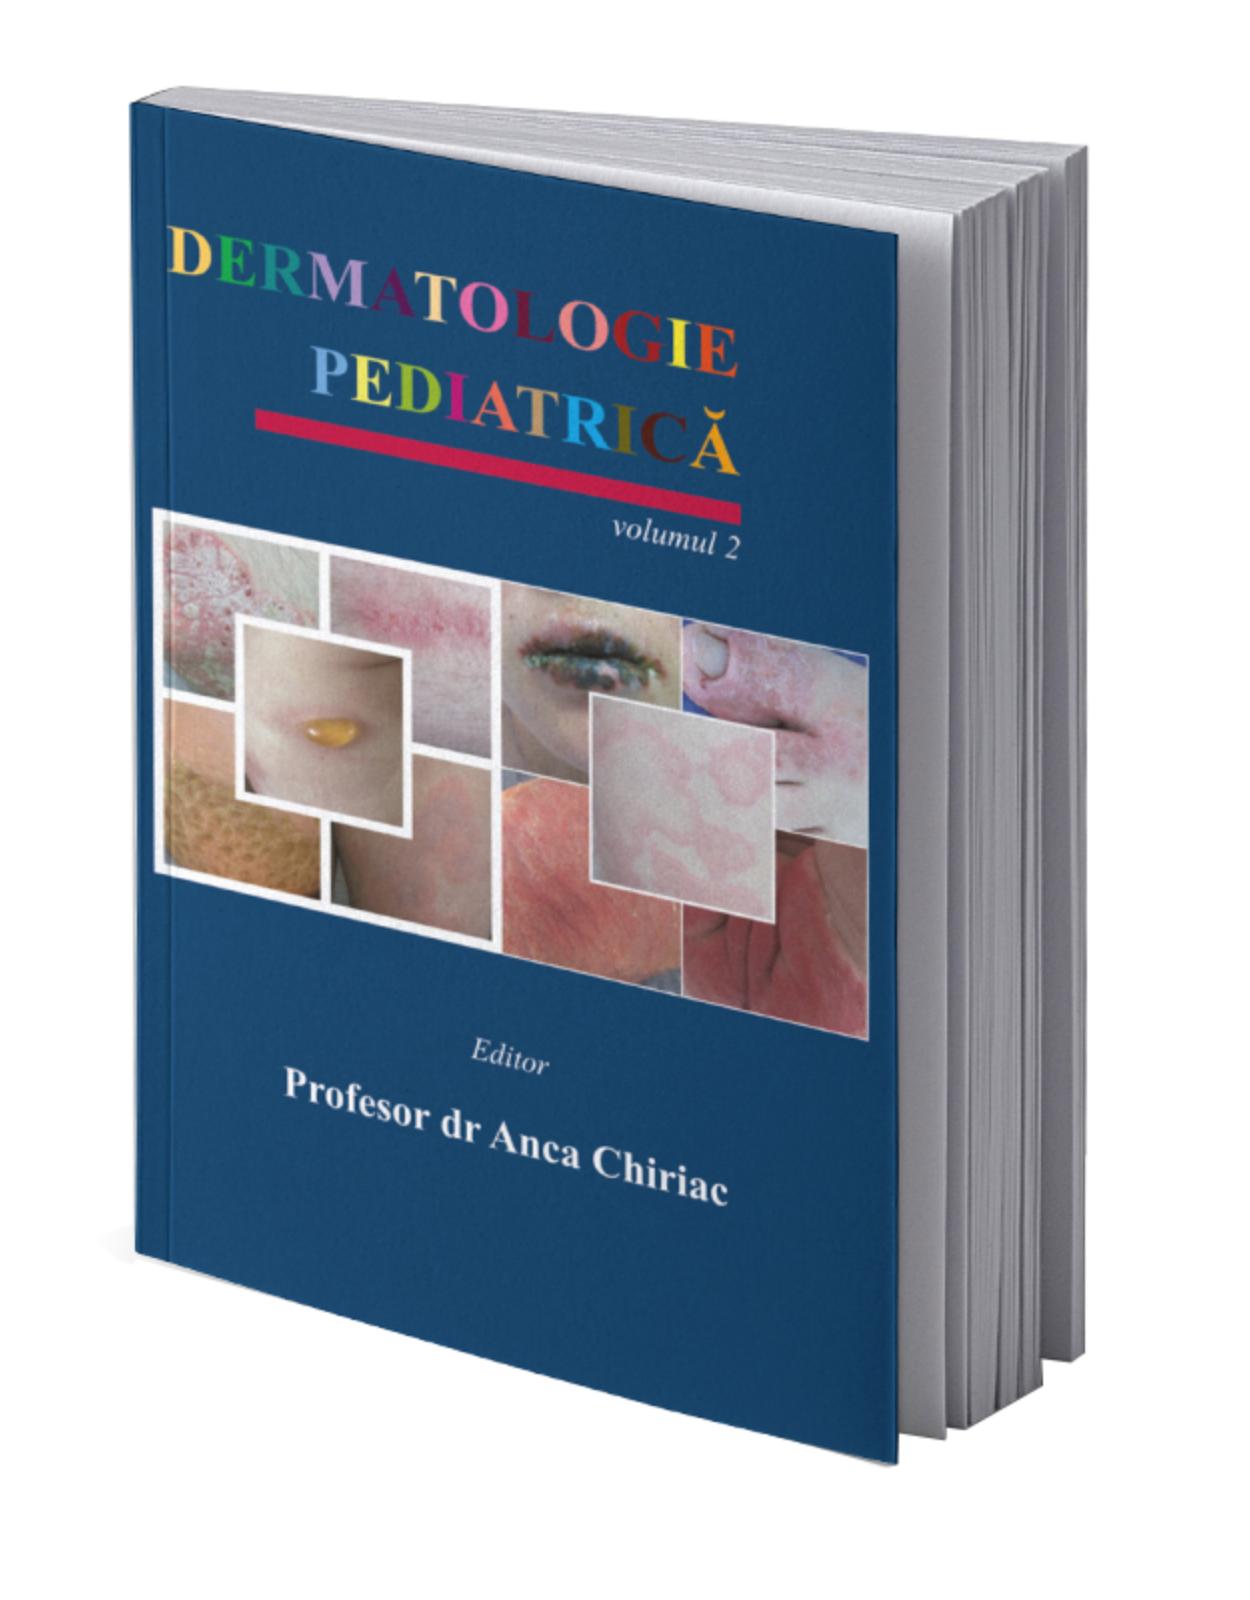 Dermatologie pediatrica Vol. 2